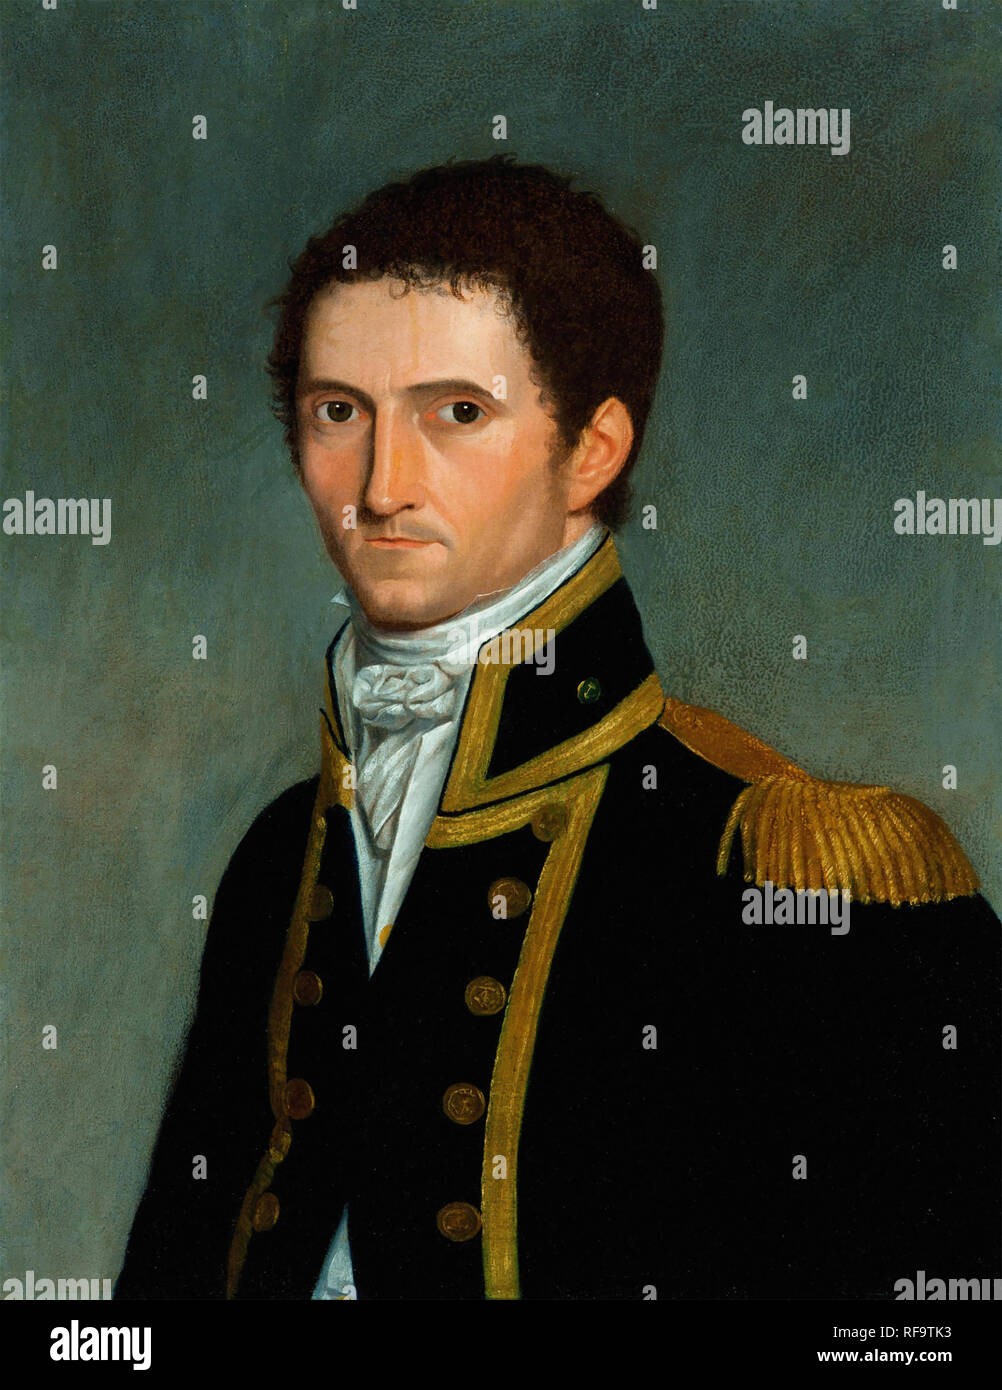 MATTHEW FLINDERS (1774-1814) officier de la marine anglaise,navigator et leader du premier tour de l'Australie Banque D'Images